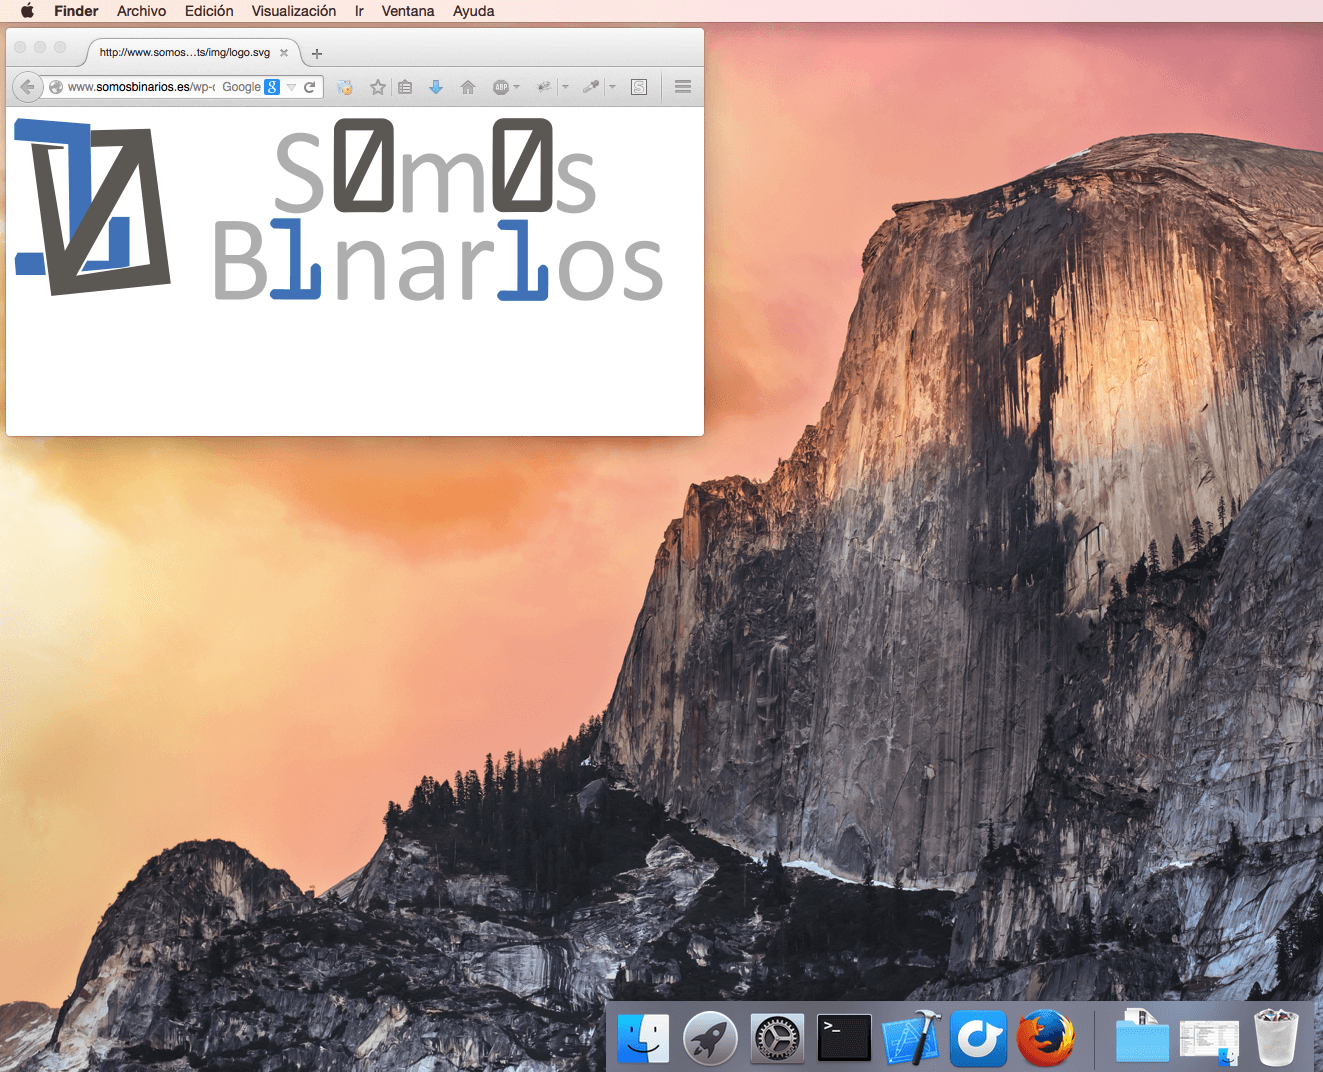 OS X Yosemite - Wikipedia